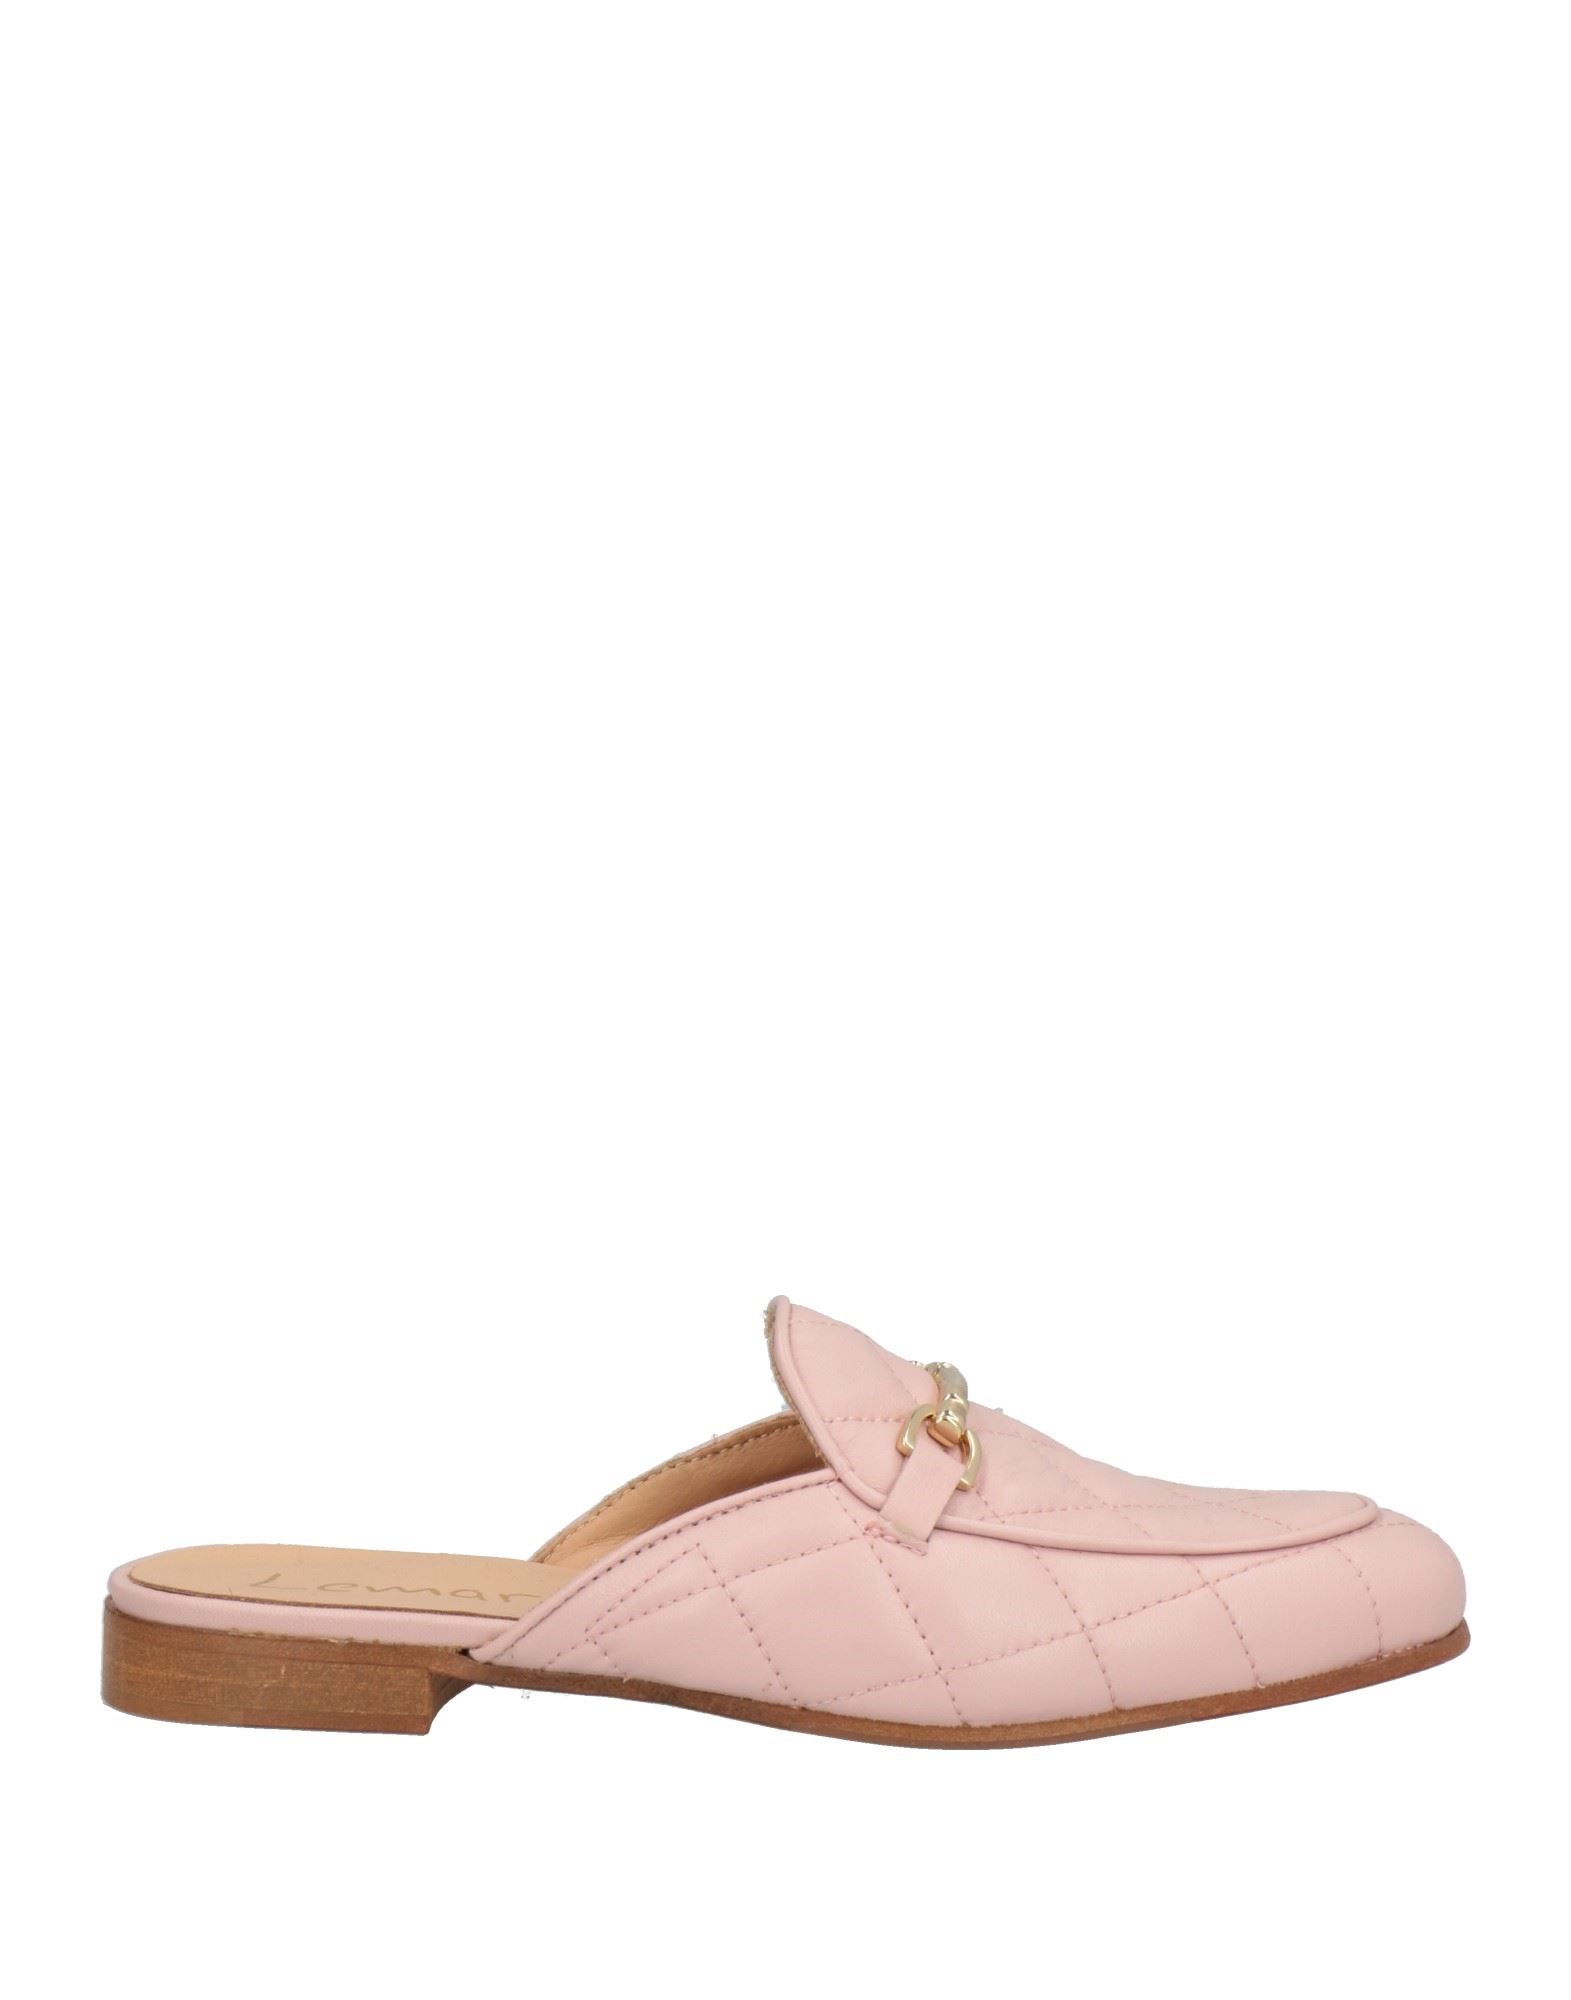 Lemaré Woman Mules & Clogs Pink Size 7 Soft Leather